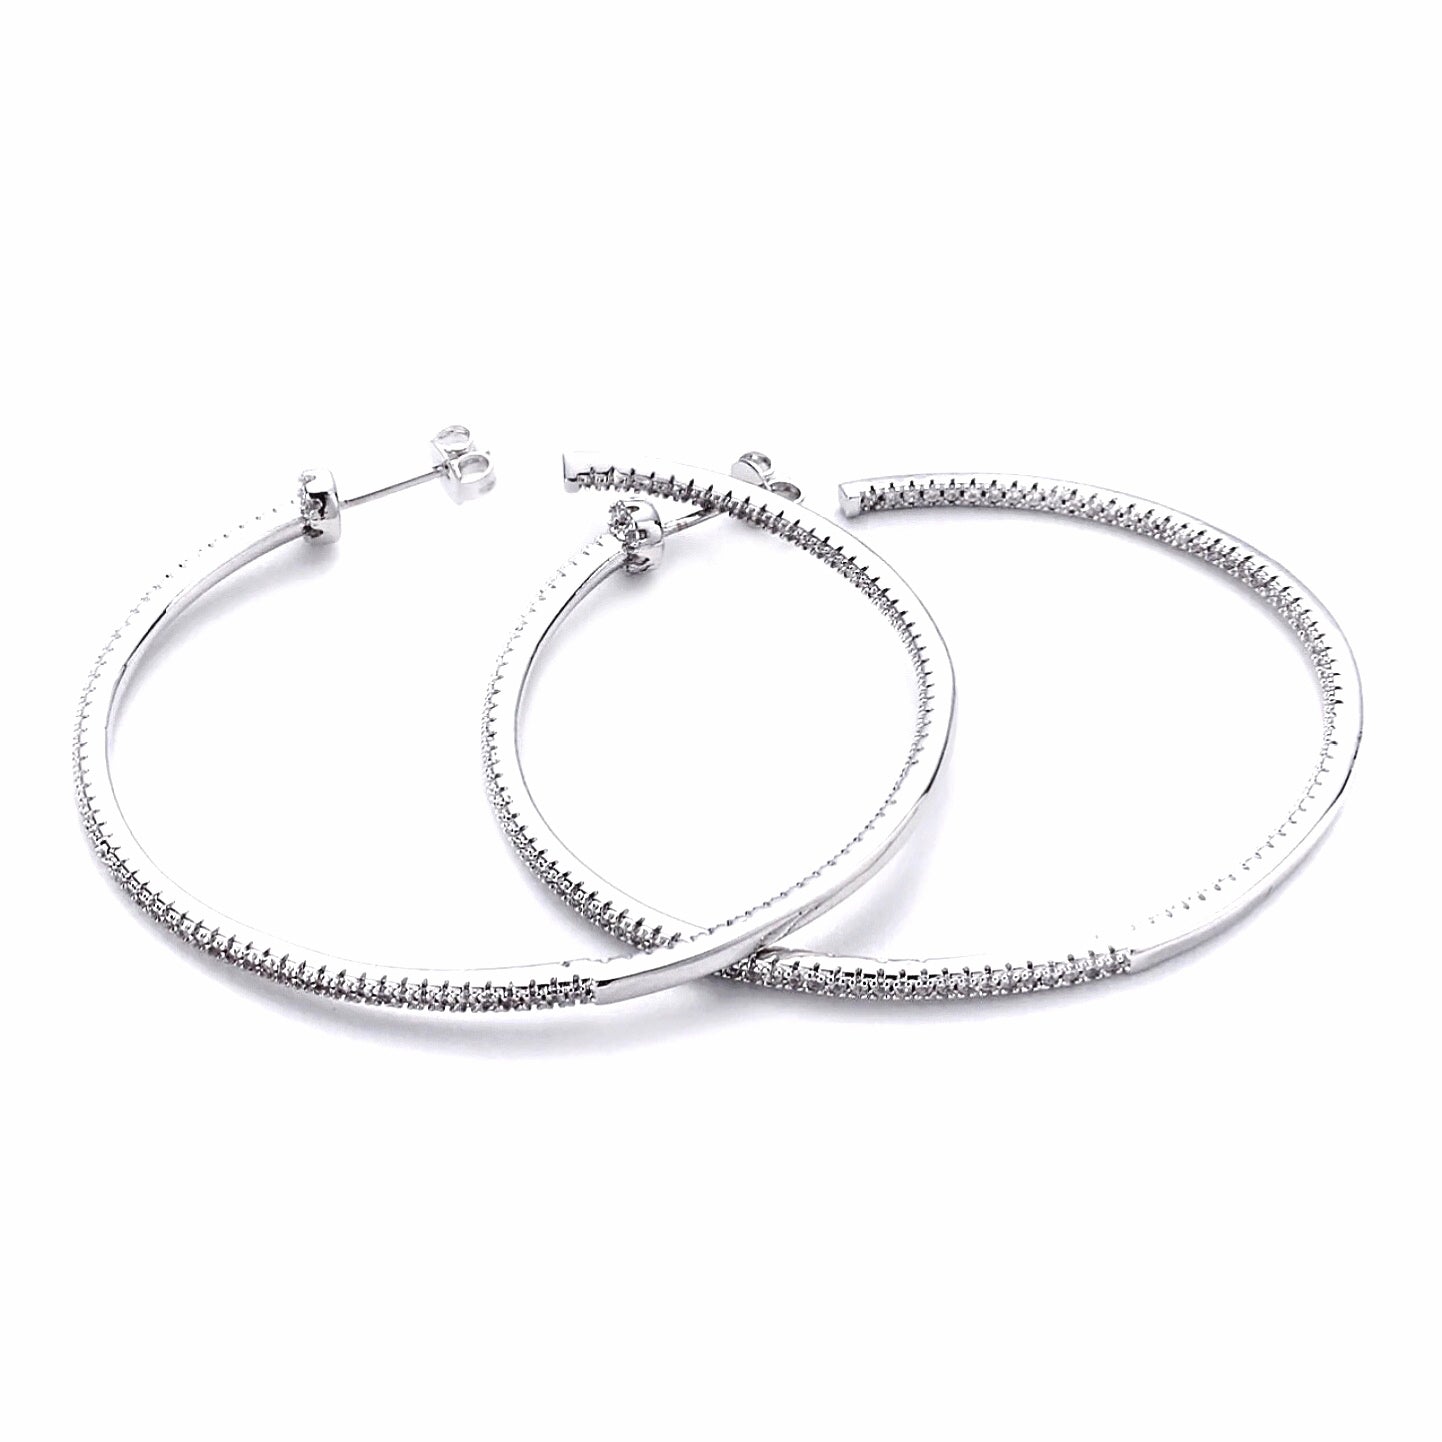 Big Silver CZ Encrusted Hoop Earrings - Best seller! - LJFjewelry